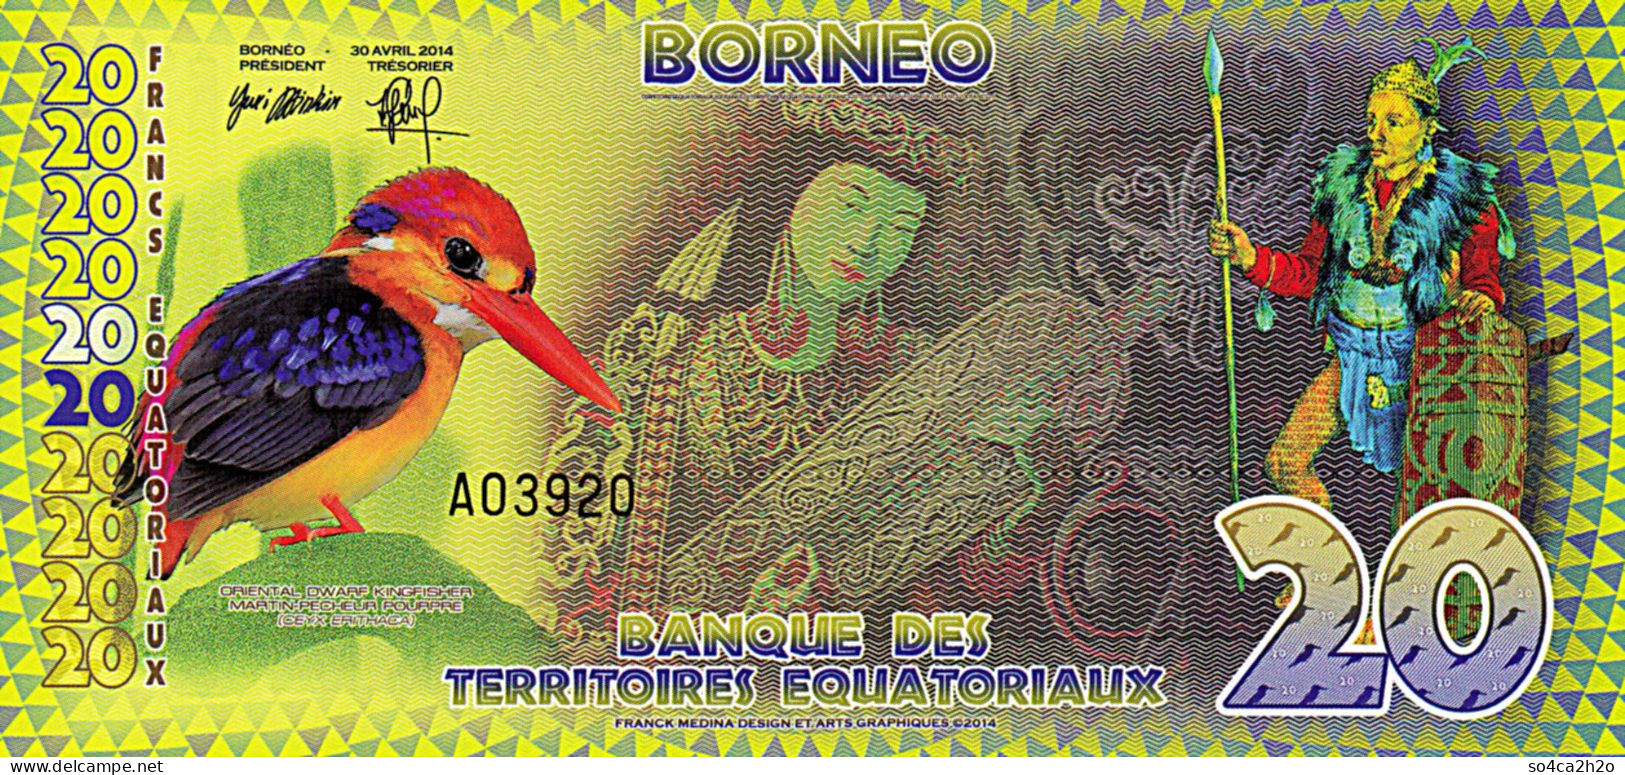 Bornéo Equatorial Territories 20 Francs 2014 UNC POLYMER - Specimen